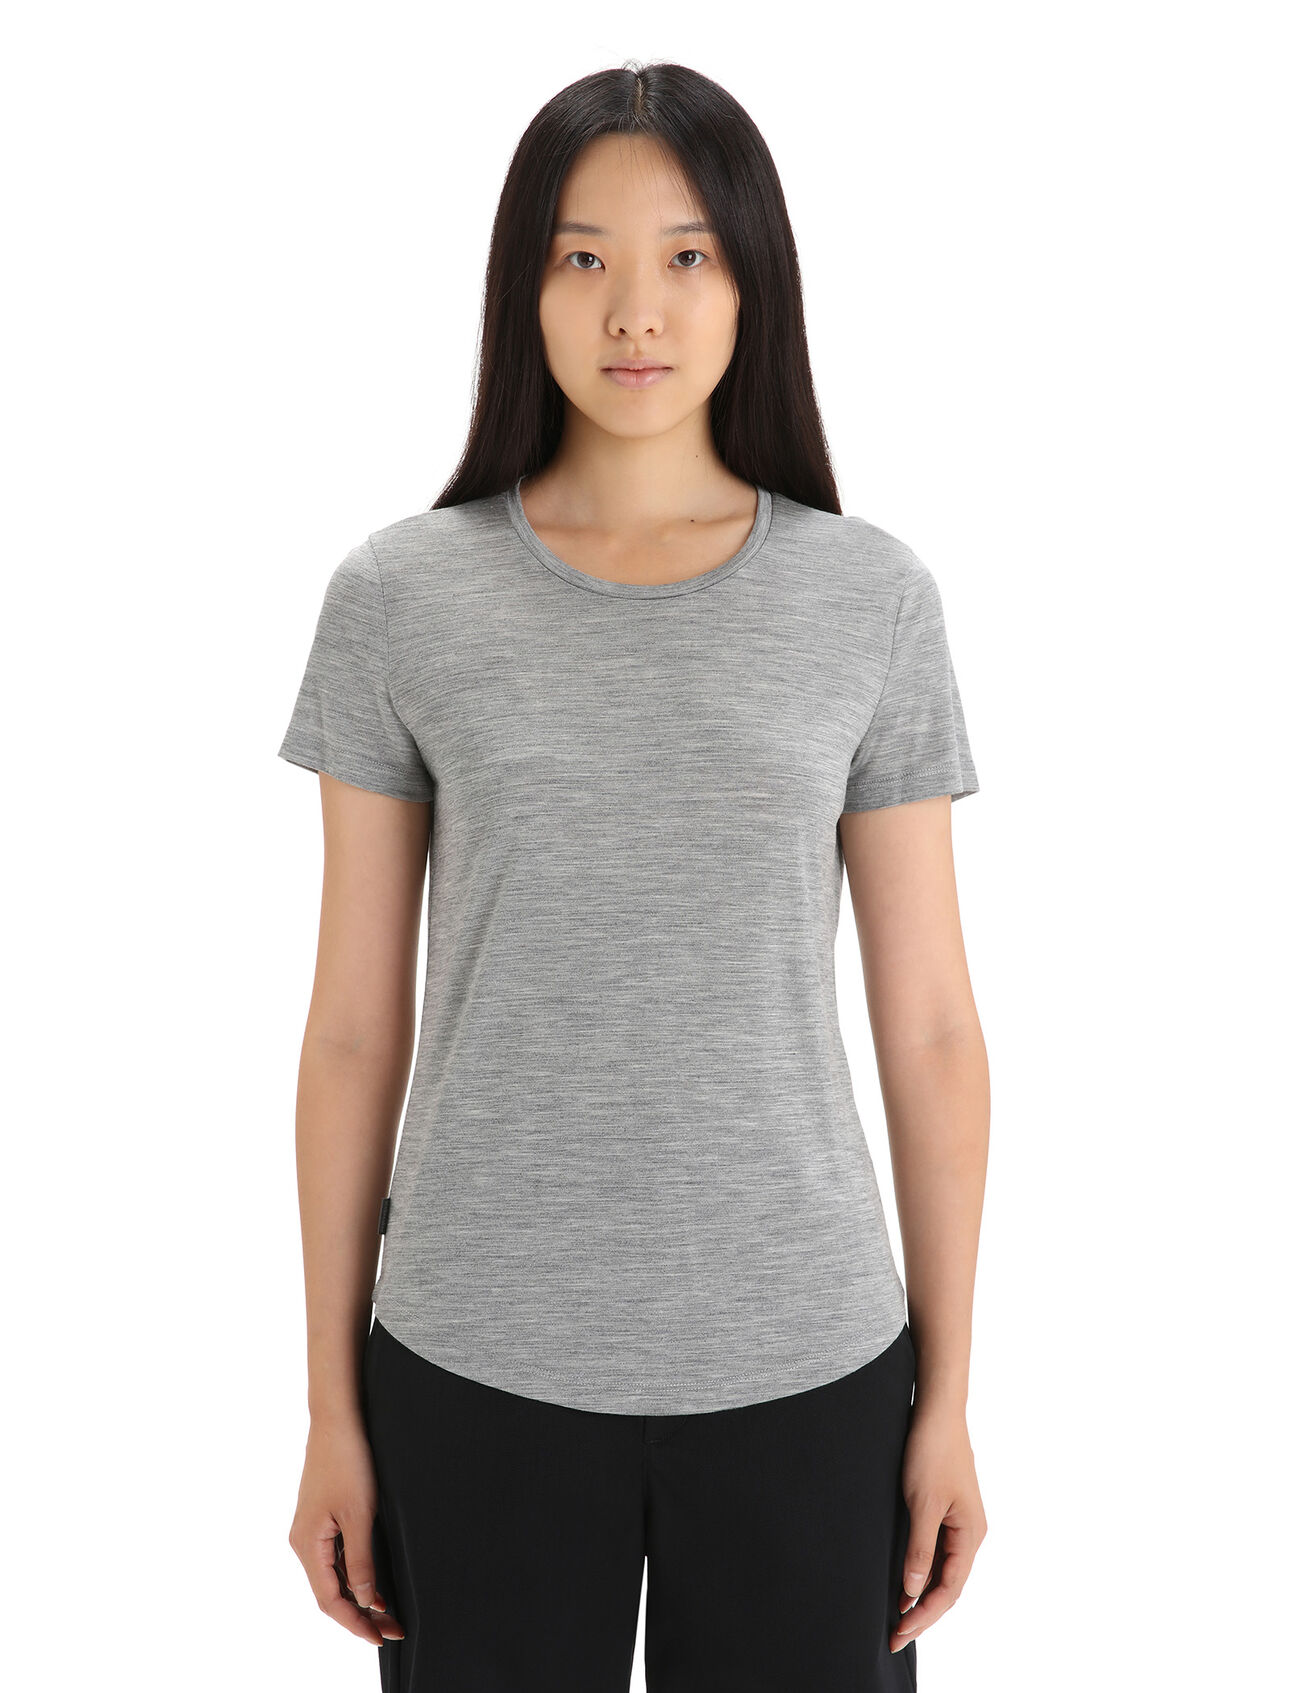 T-shirt Sphere II en mérinos Femmes En mélange de mérinos fait avec notre jersey Cool-Lite™, le t-shirt Sphere II vous procure une respirabilité, une résistance aux odeurs et un confort naturels. 